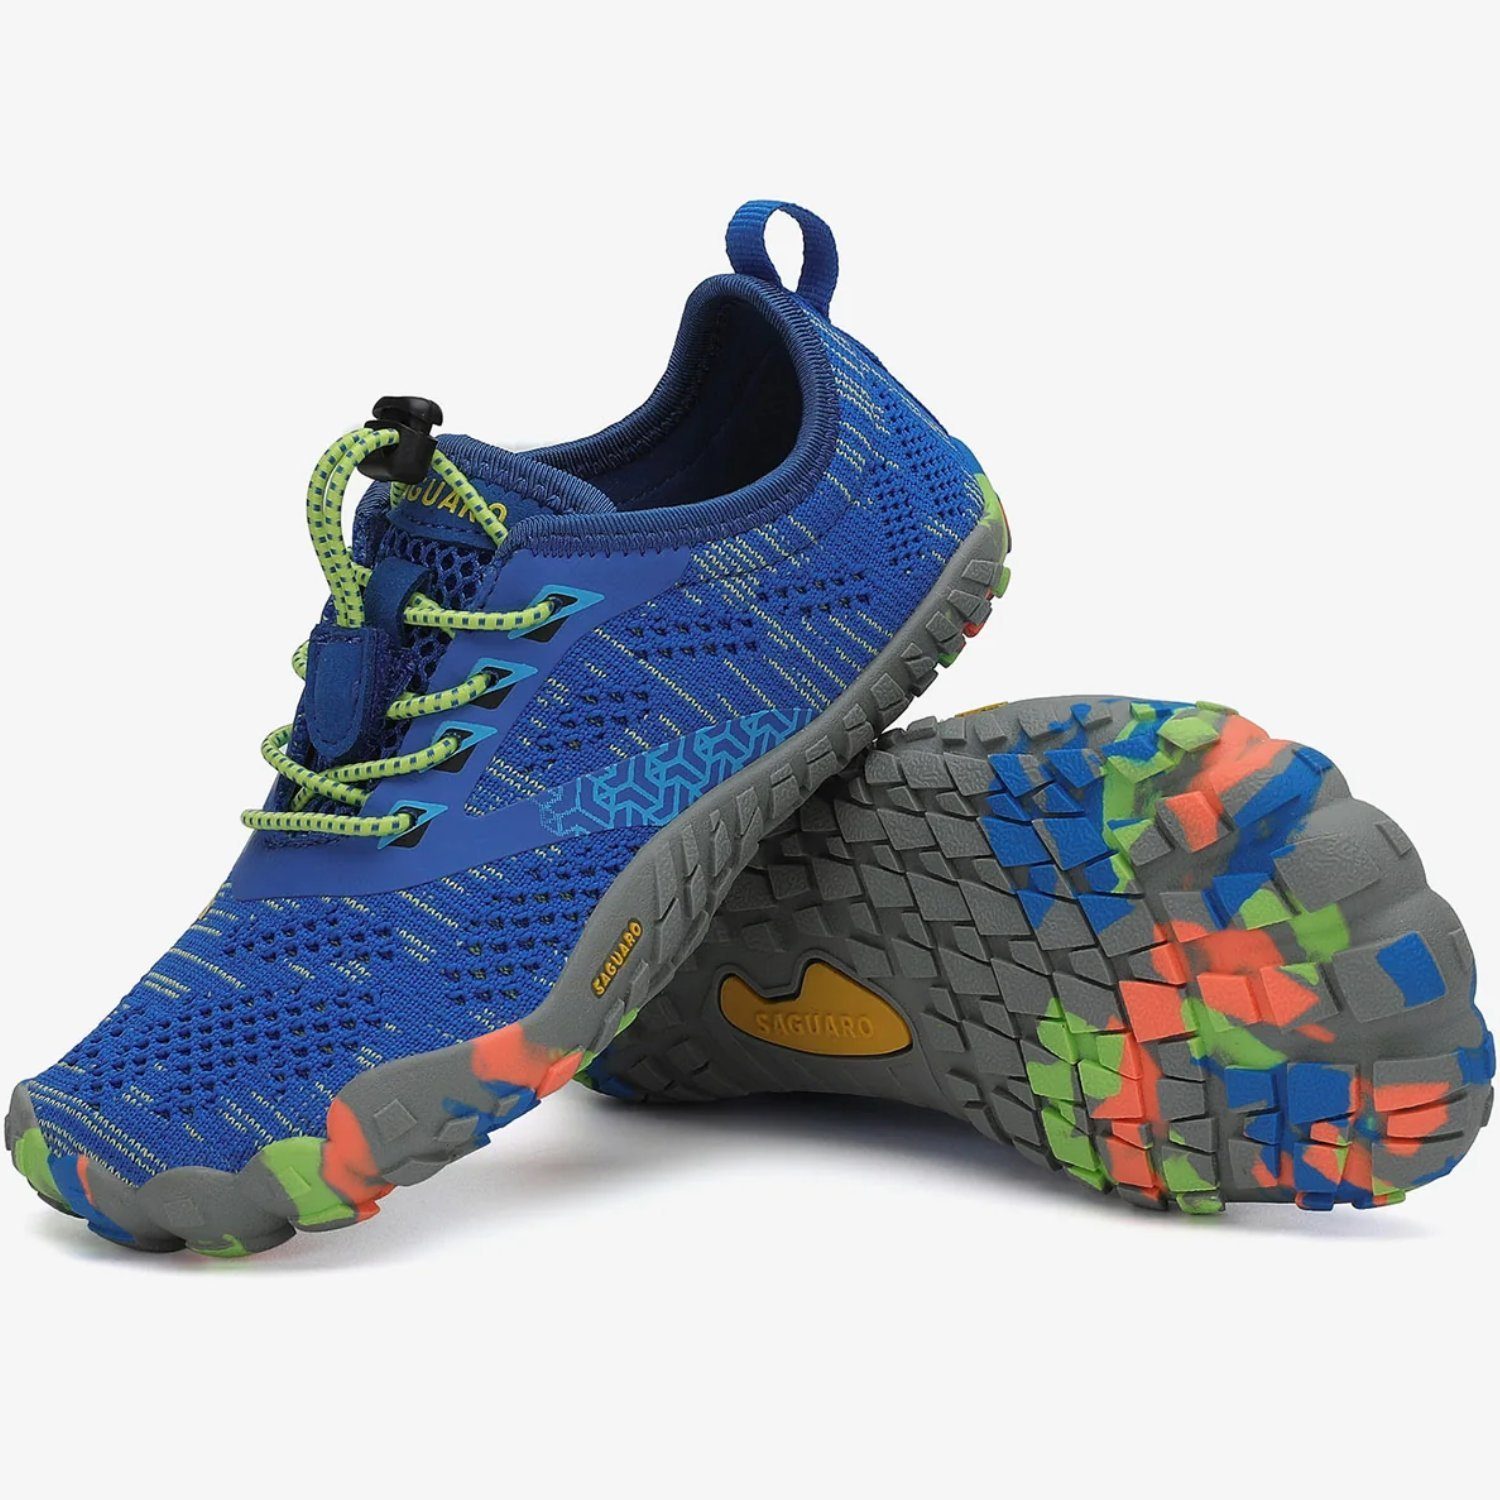 SAGUARO Barfußschuh (bequem, rutschfest) atmungsaktiv, Laufschuhe Minimalschuhe Blau Kids Sneaker Sport-Schuhe leicht, Trail-Running Jogging 025